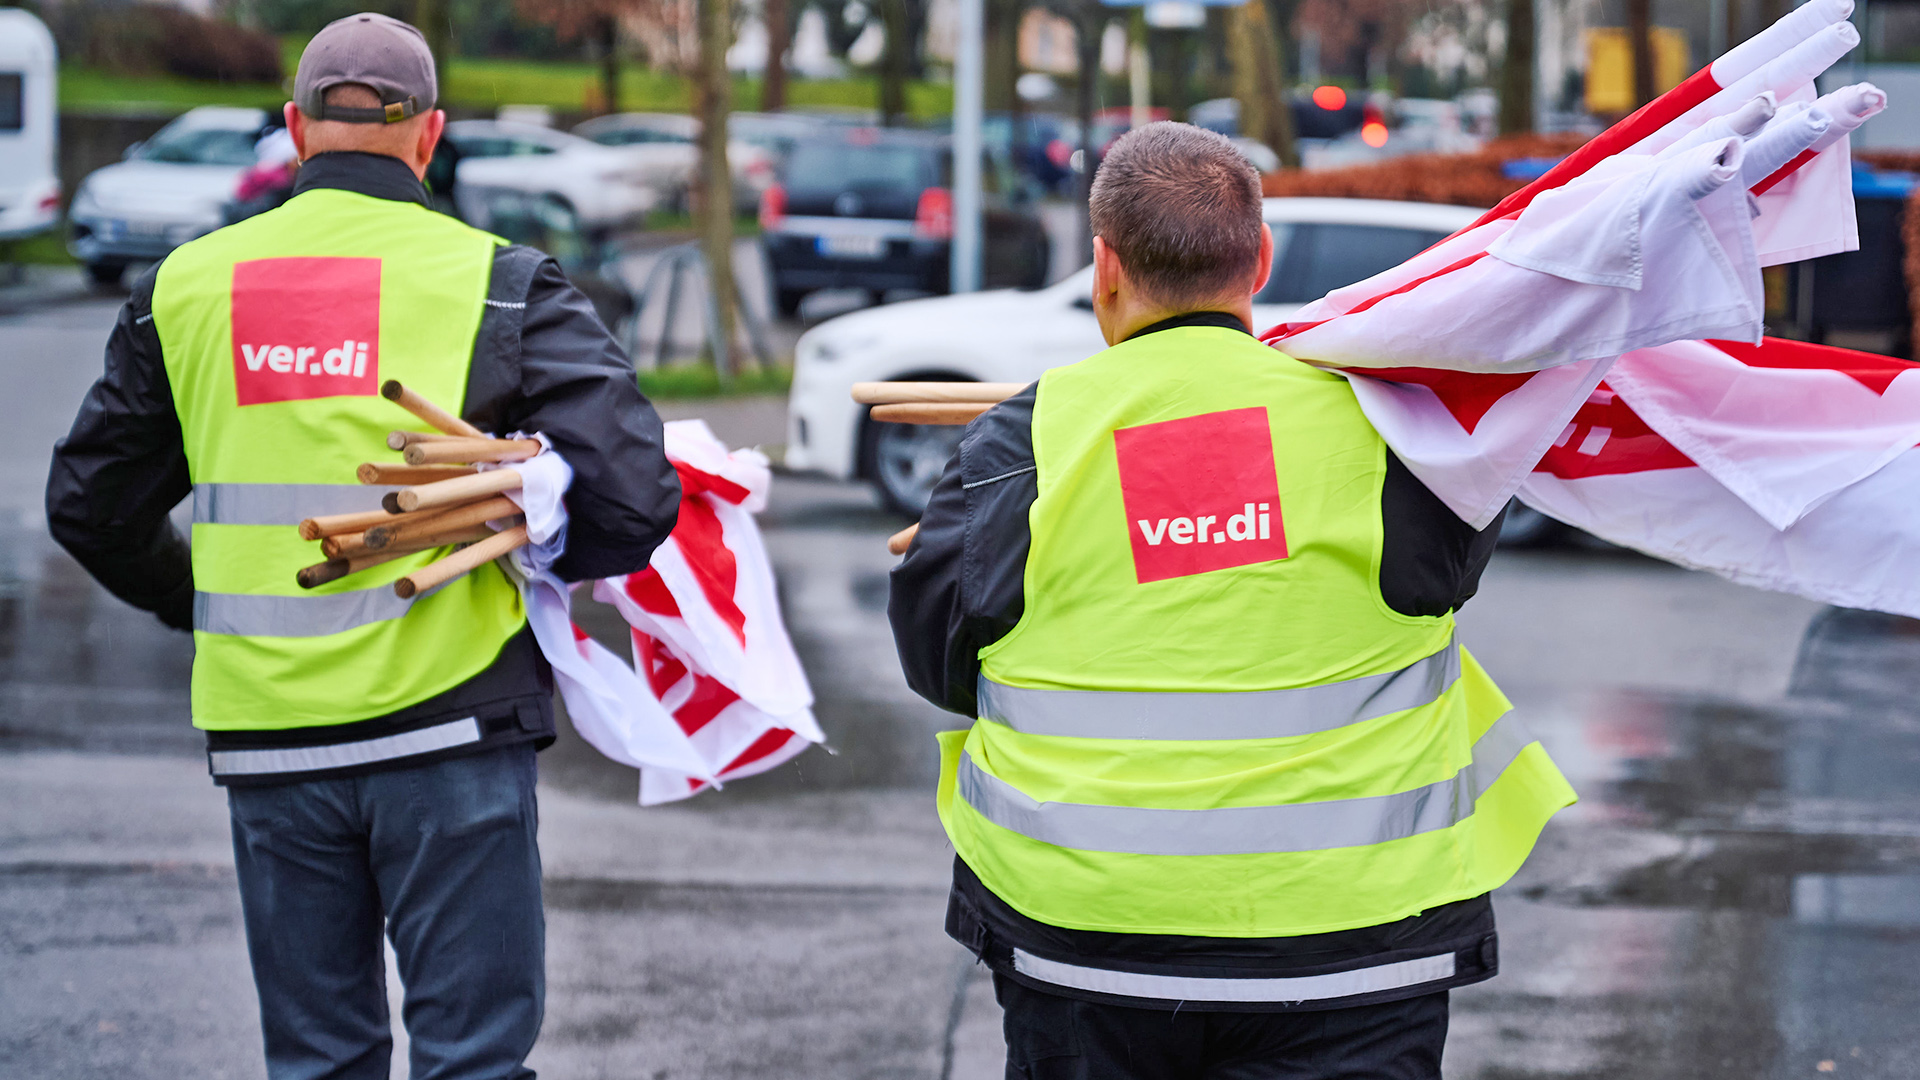 Symbolbild: Gewerkschaften tragen Fahnen von Verdi zum Streik.(Quelle: dpa/Bernd Thissen)